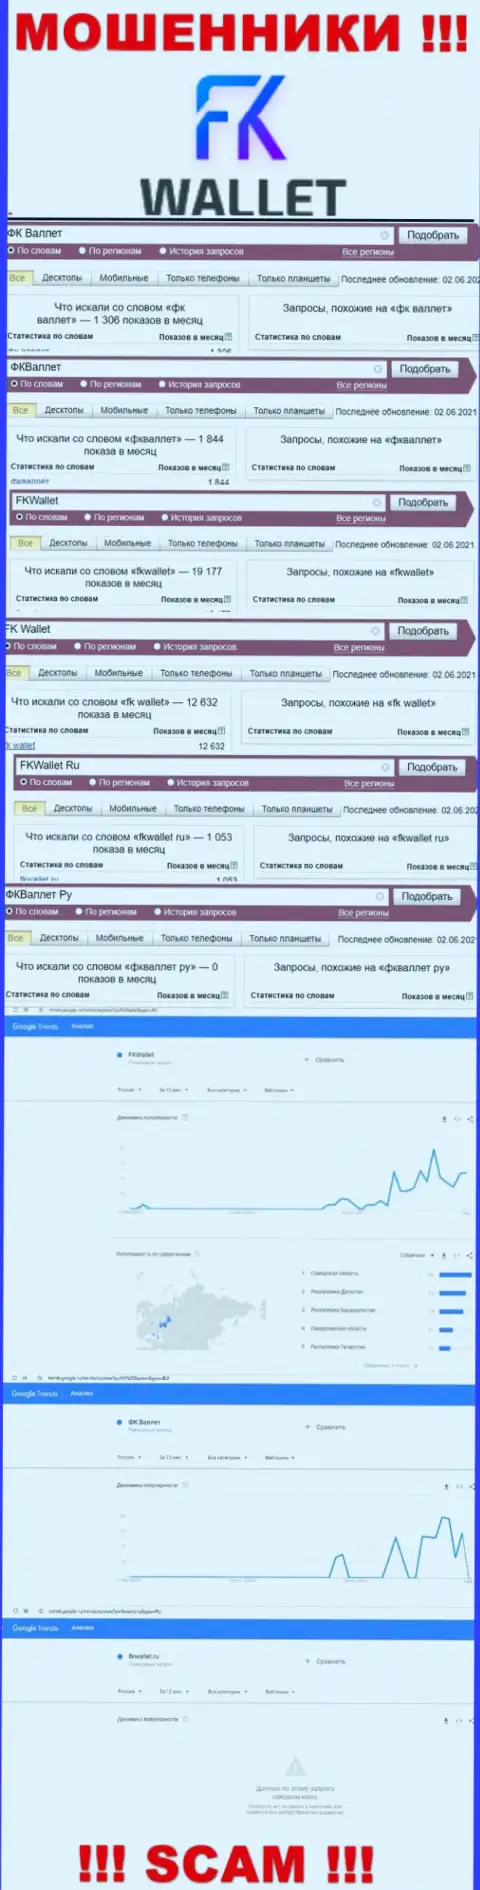 Скрин результата поисковых запросов по противозаконно действующей организации FKWallet